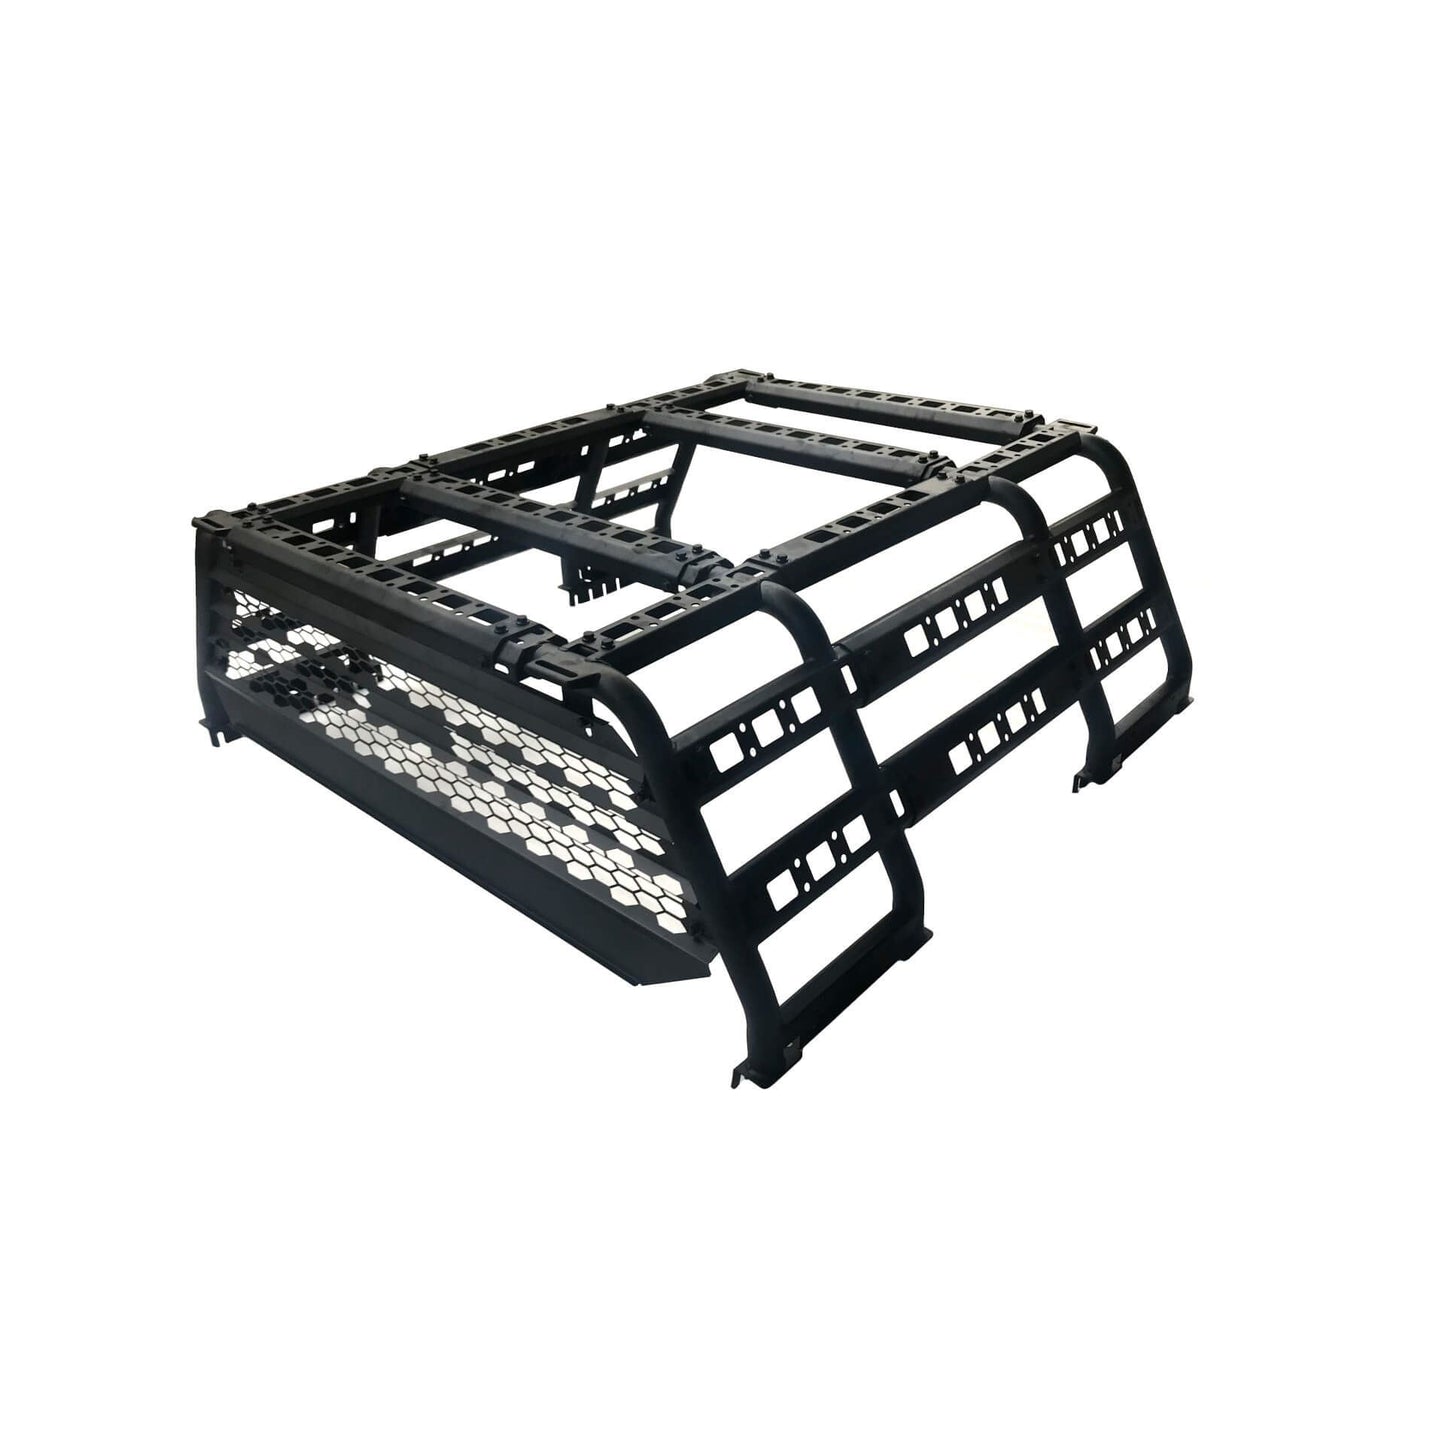 Adjustable Expedition Load Bed Rack Frame System for Volkswagen Amarok